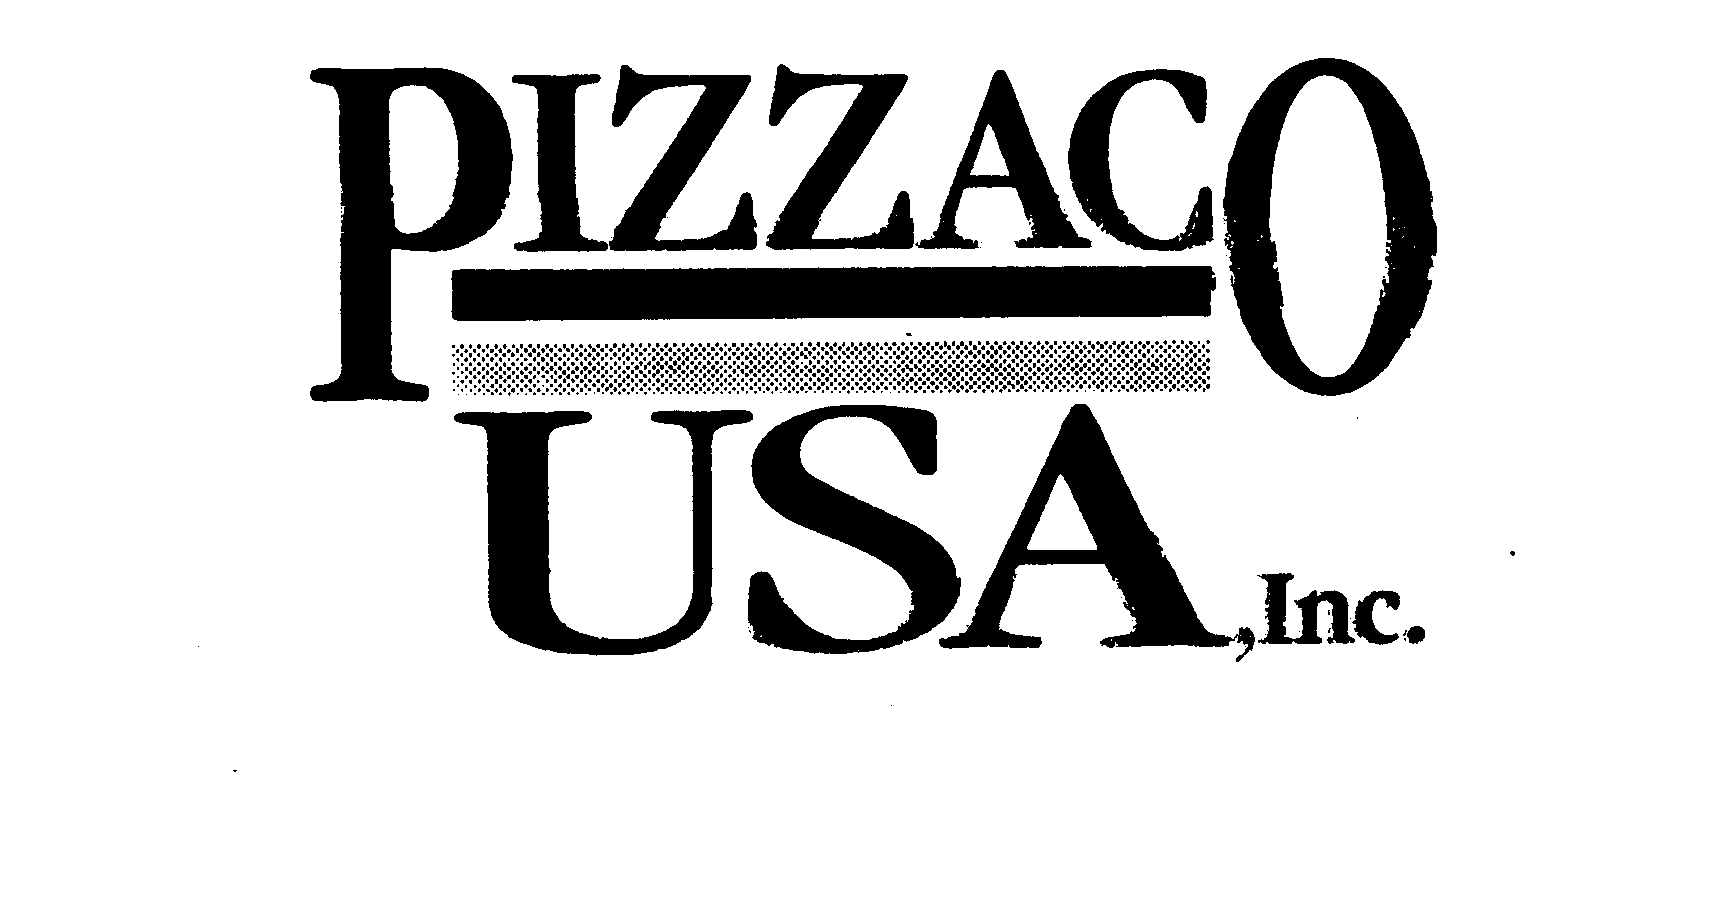 Trademark Logo PIZZACO USA, INC.